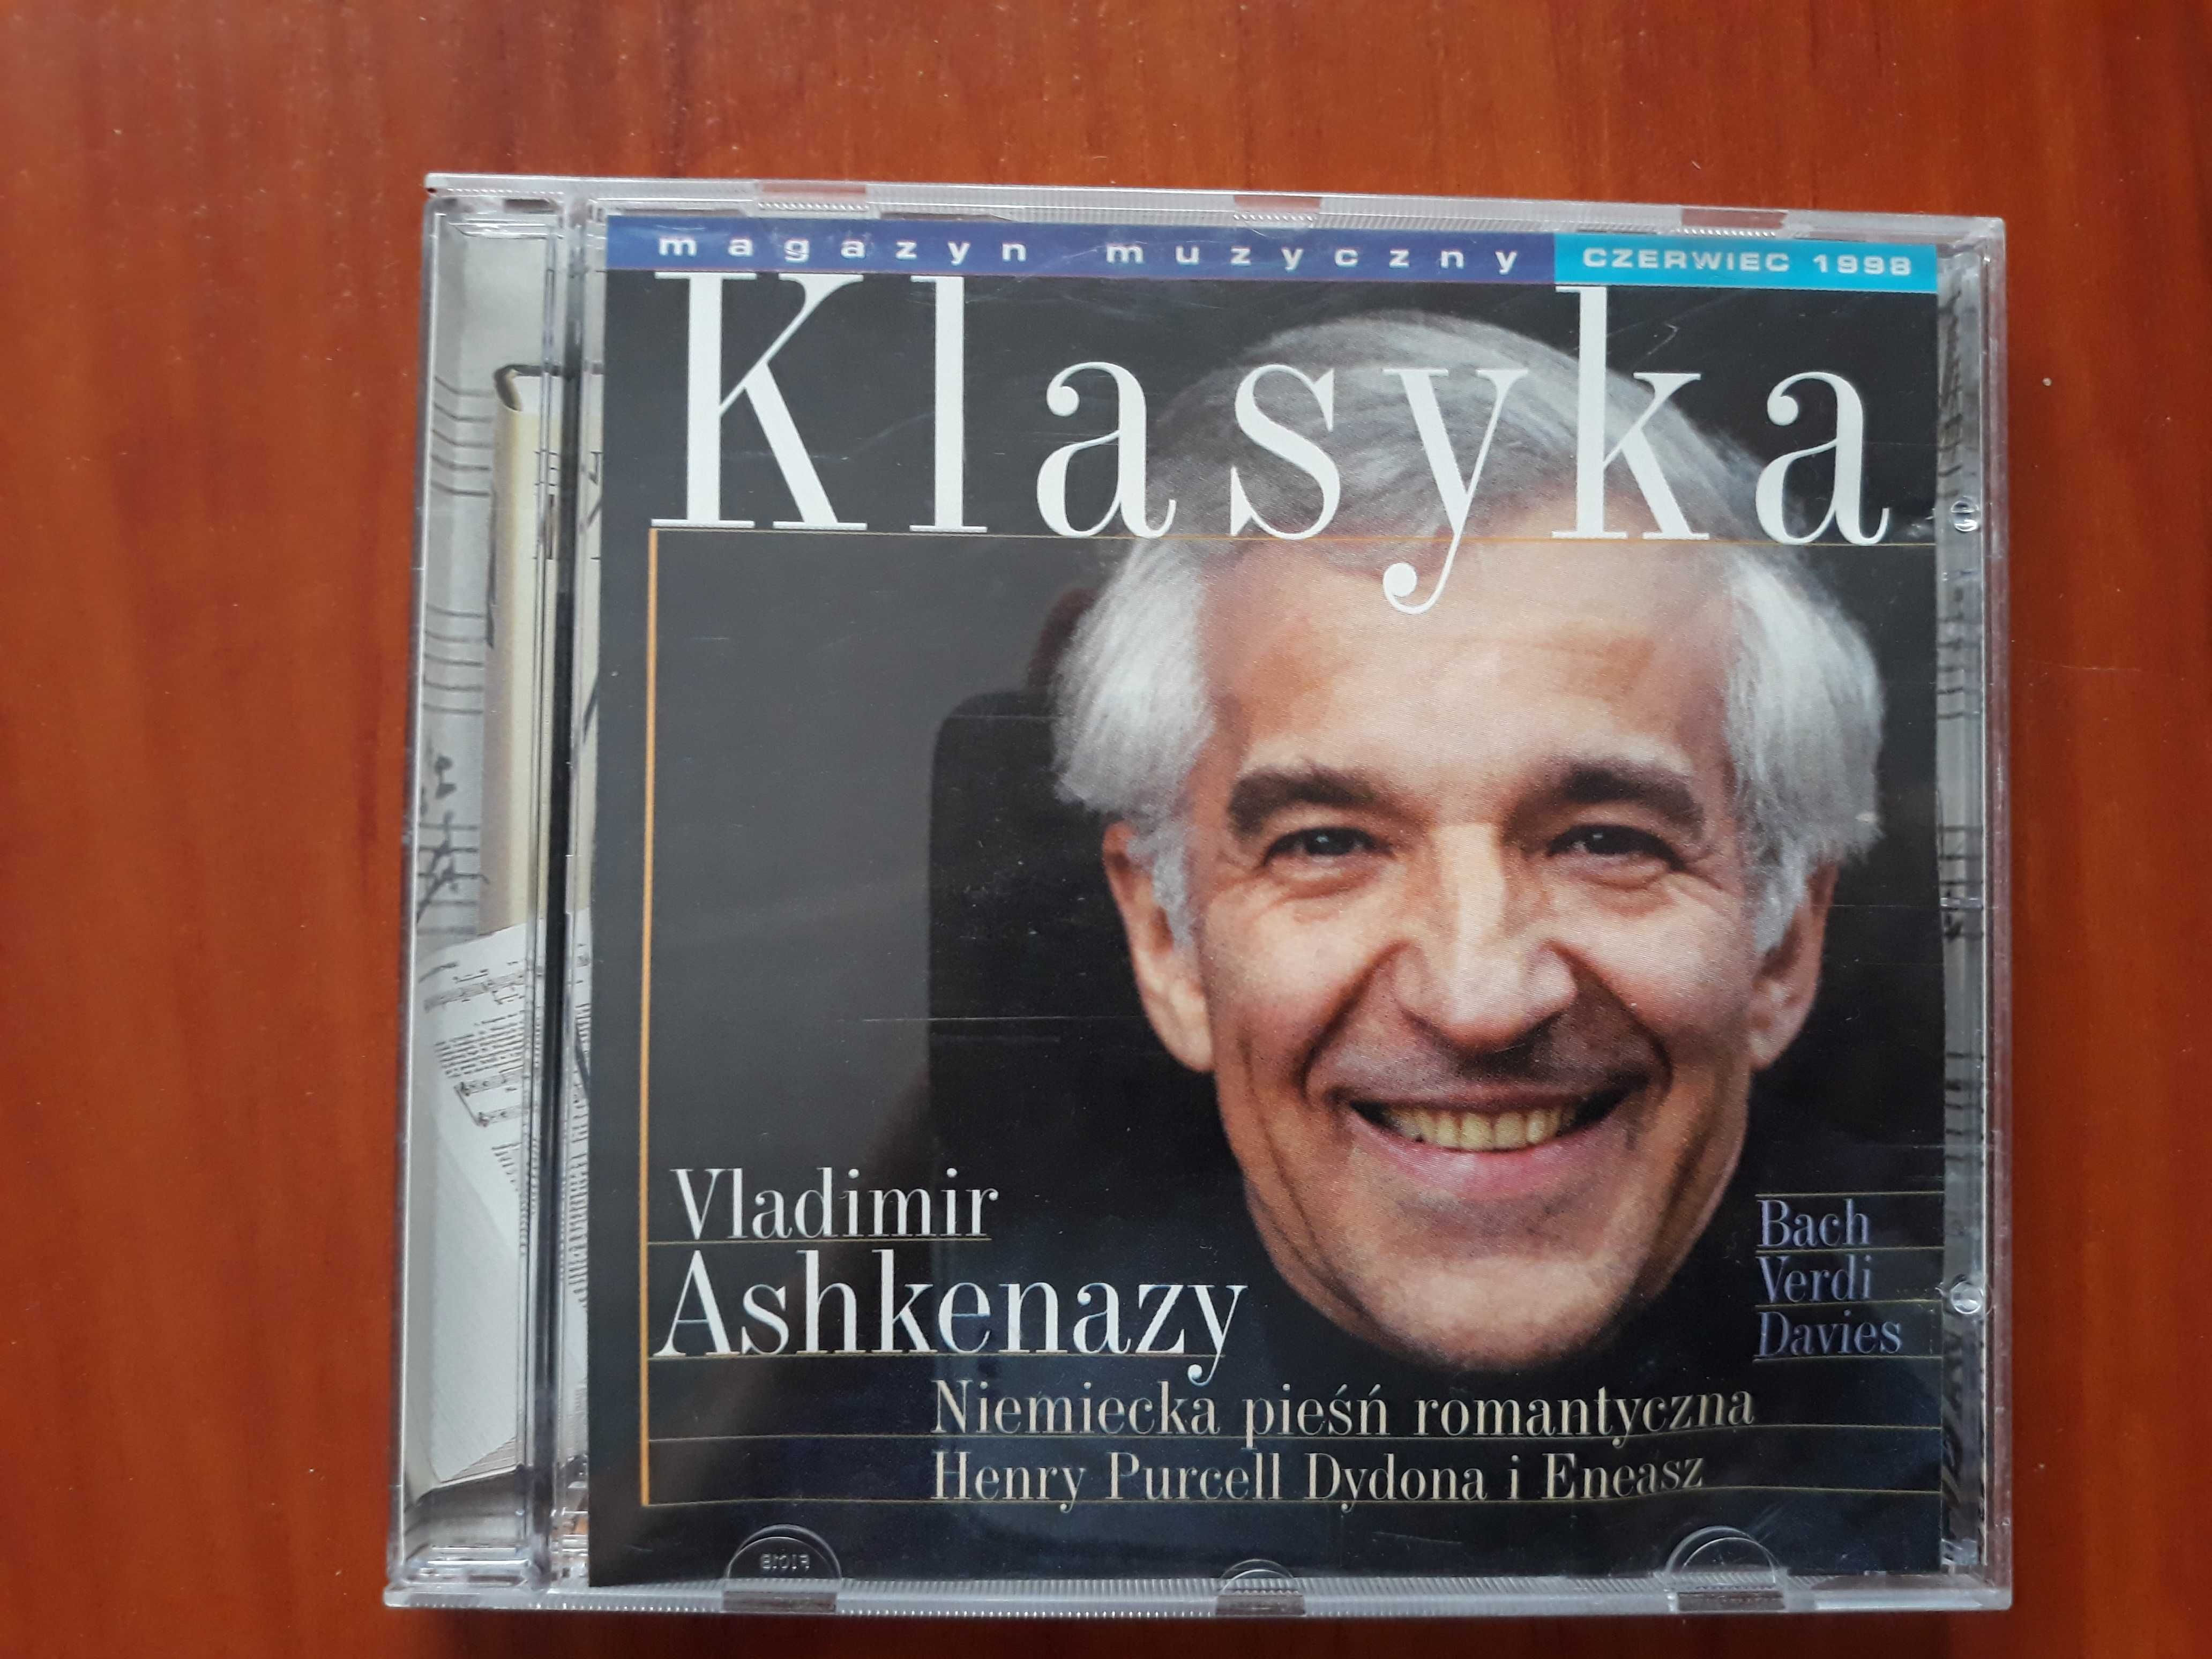 CD - Vladimir Ashkenazy